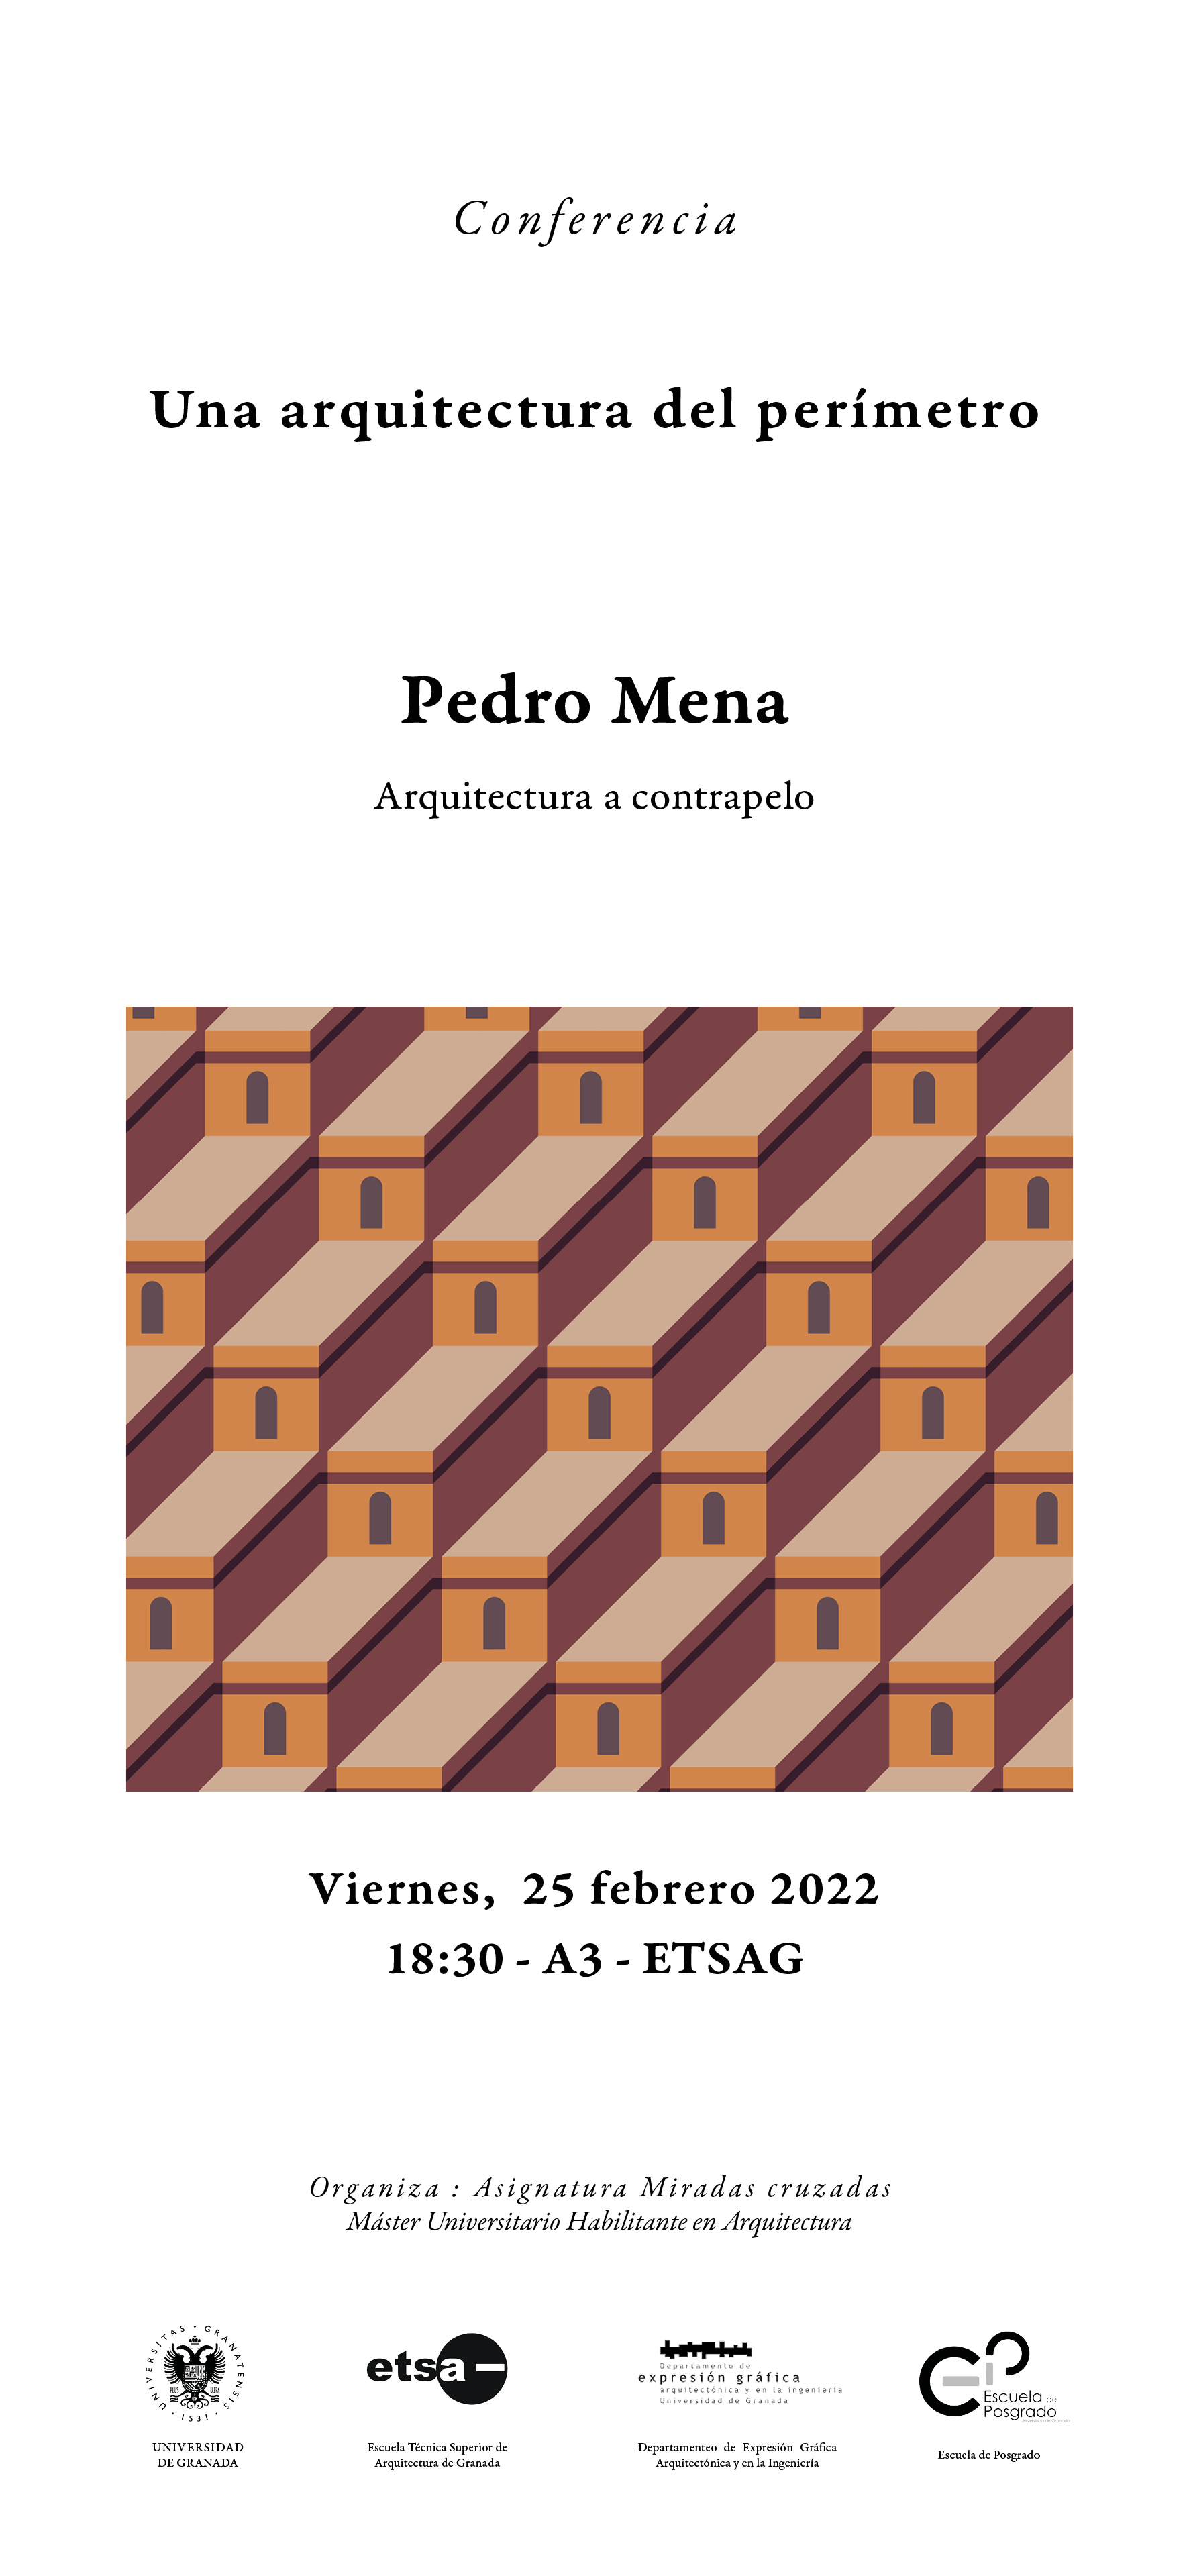 Cartel de la Conferencia de Pedro Mena